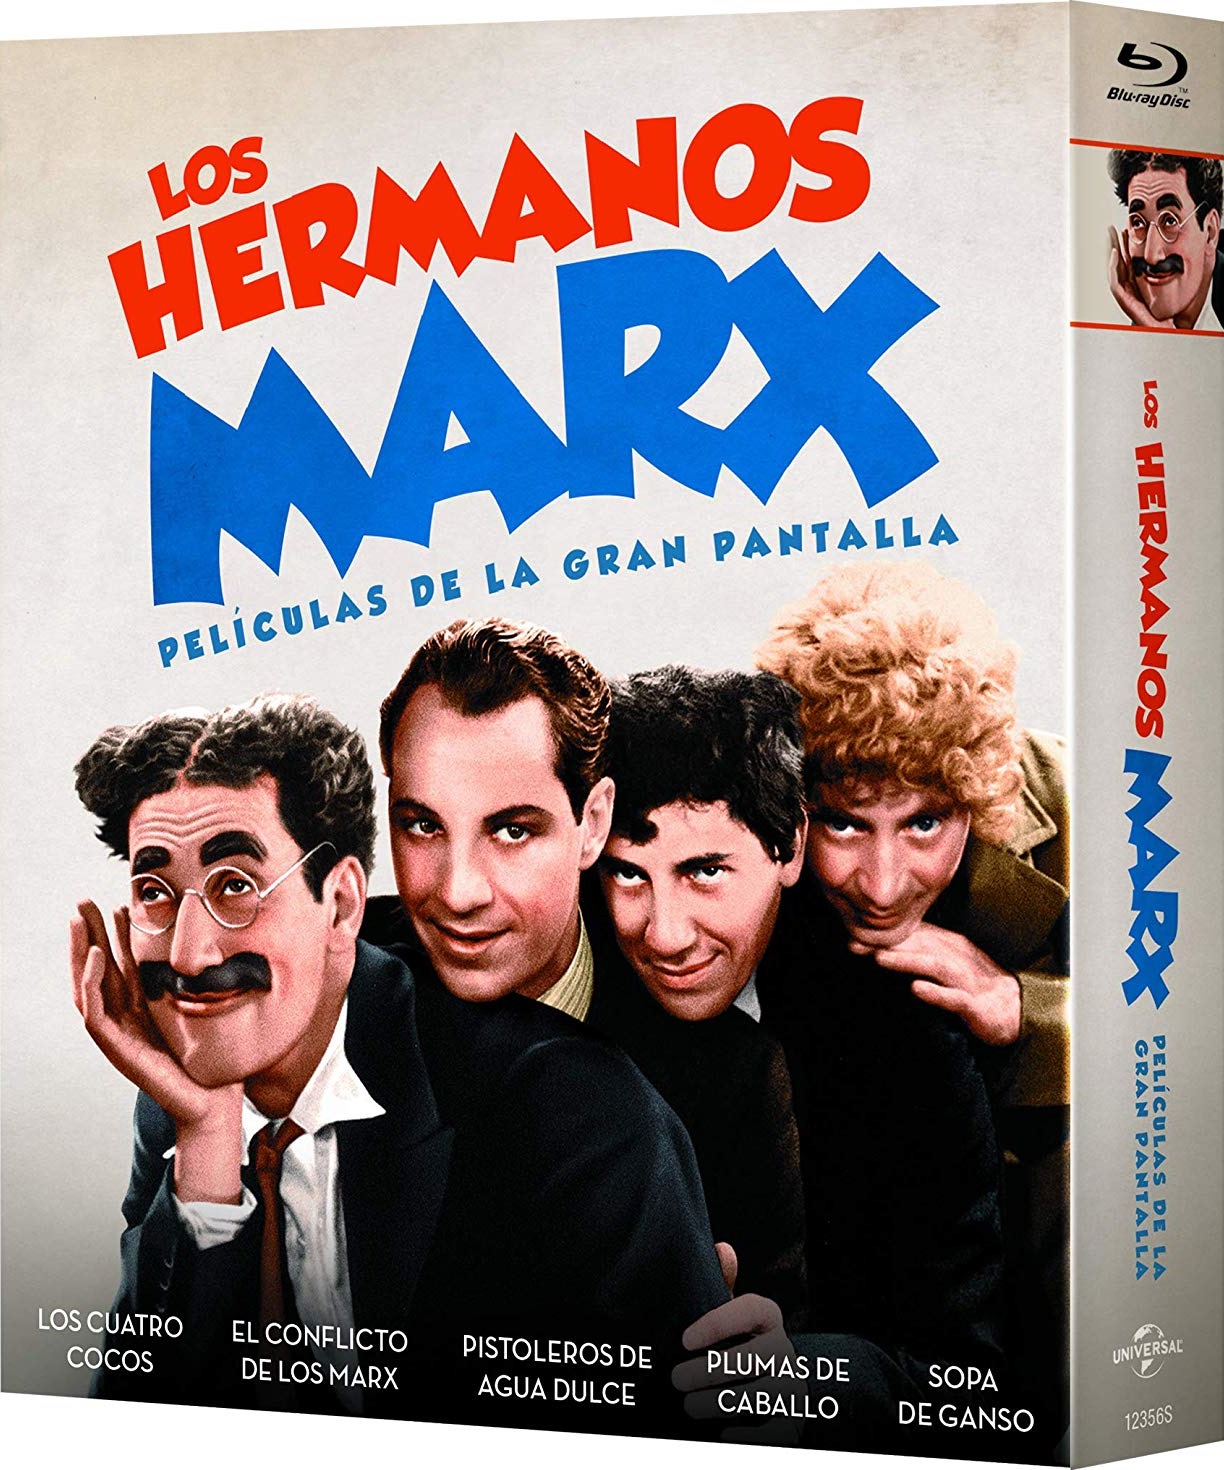 The Marx Brothers aka Los hermanos Marx - Películas de la gran pantalla Spanish Blu-ray set